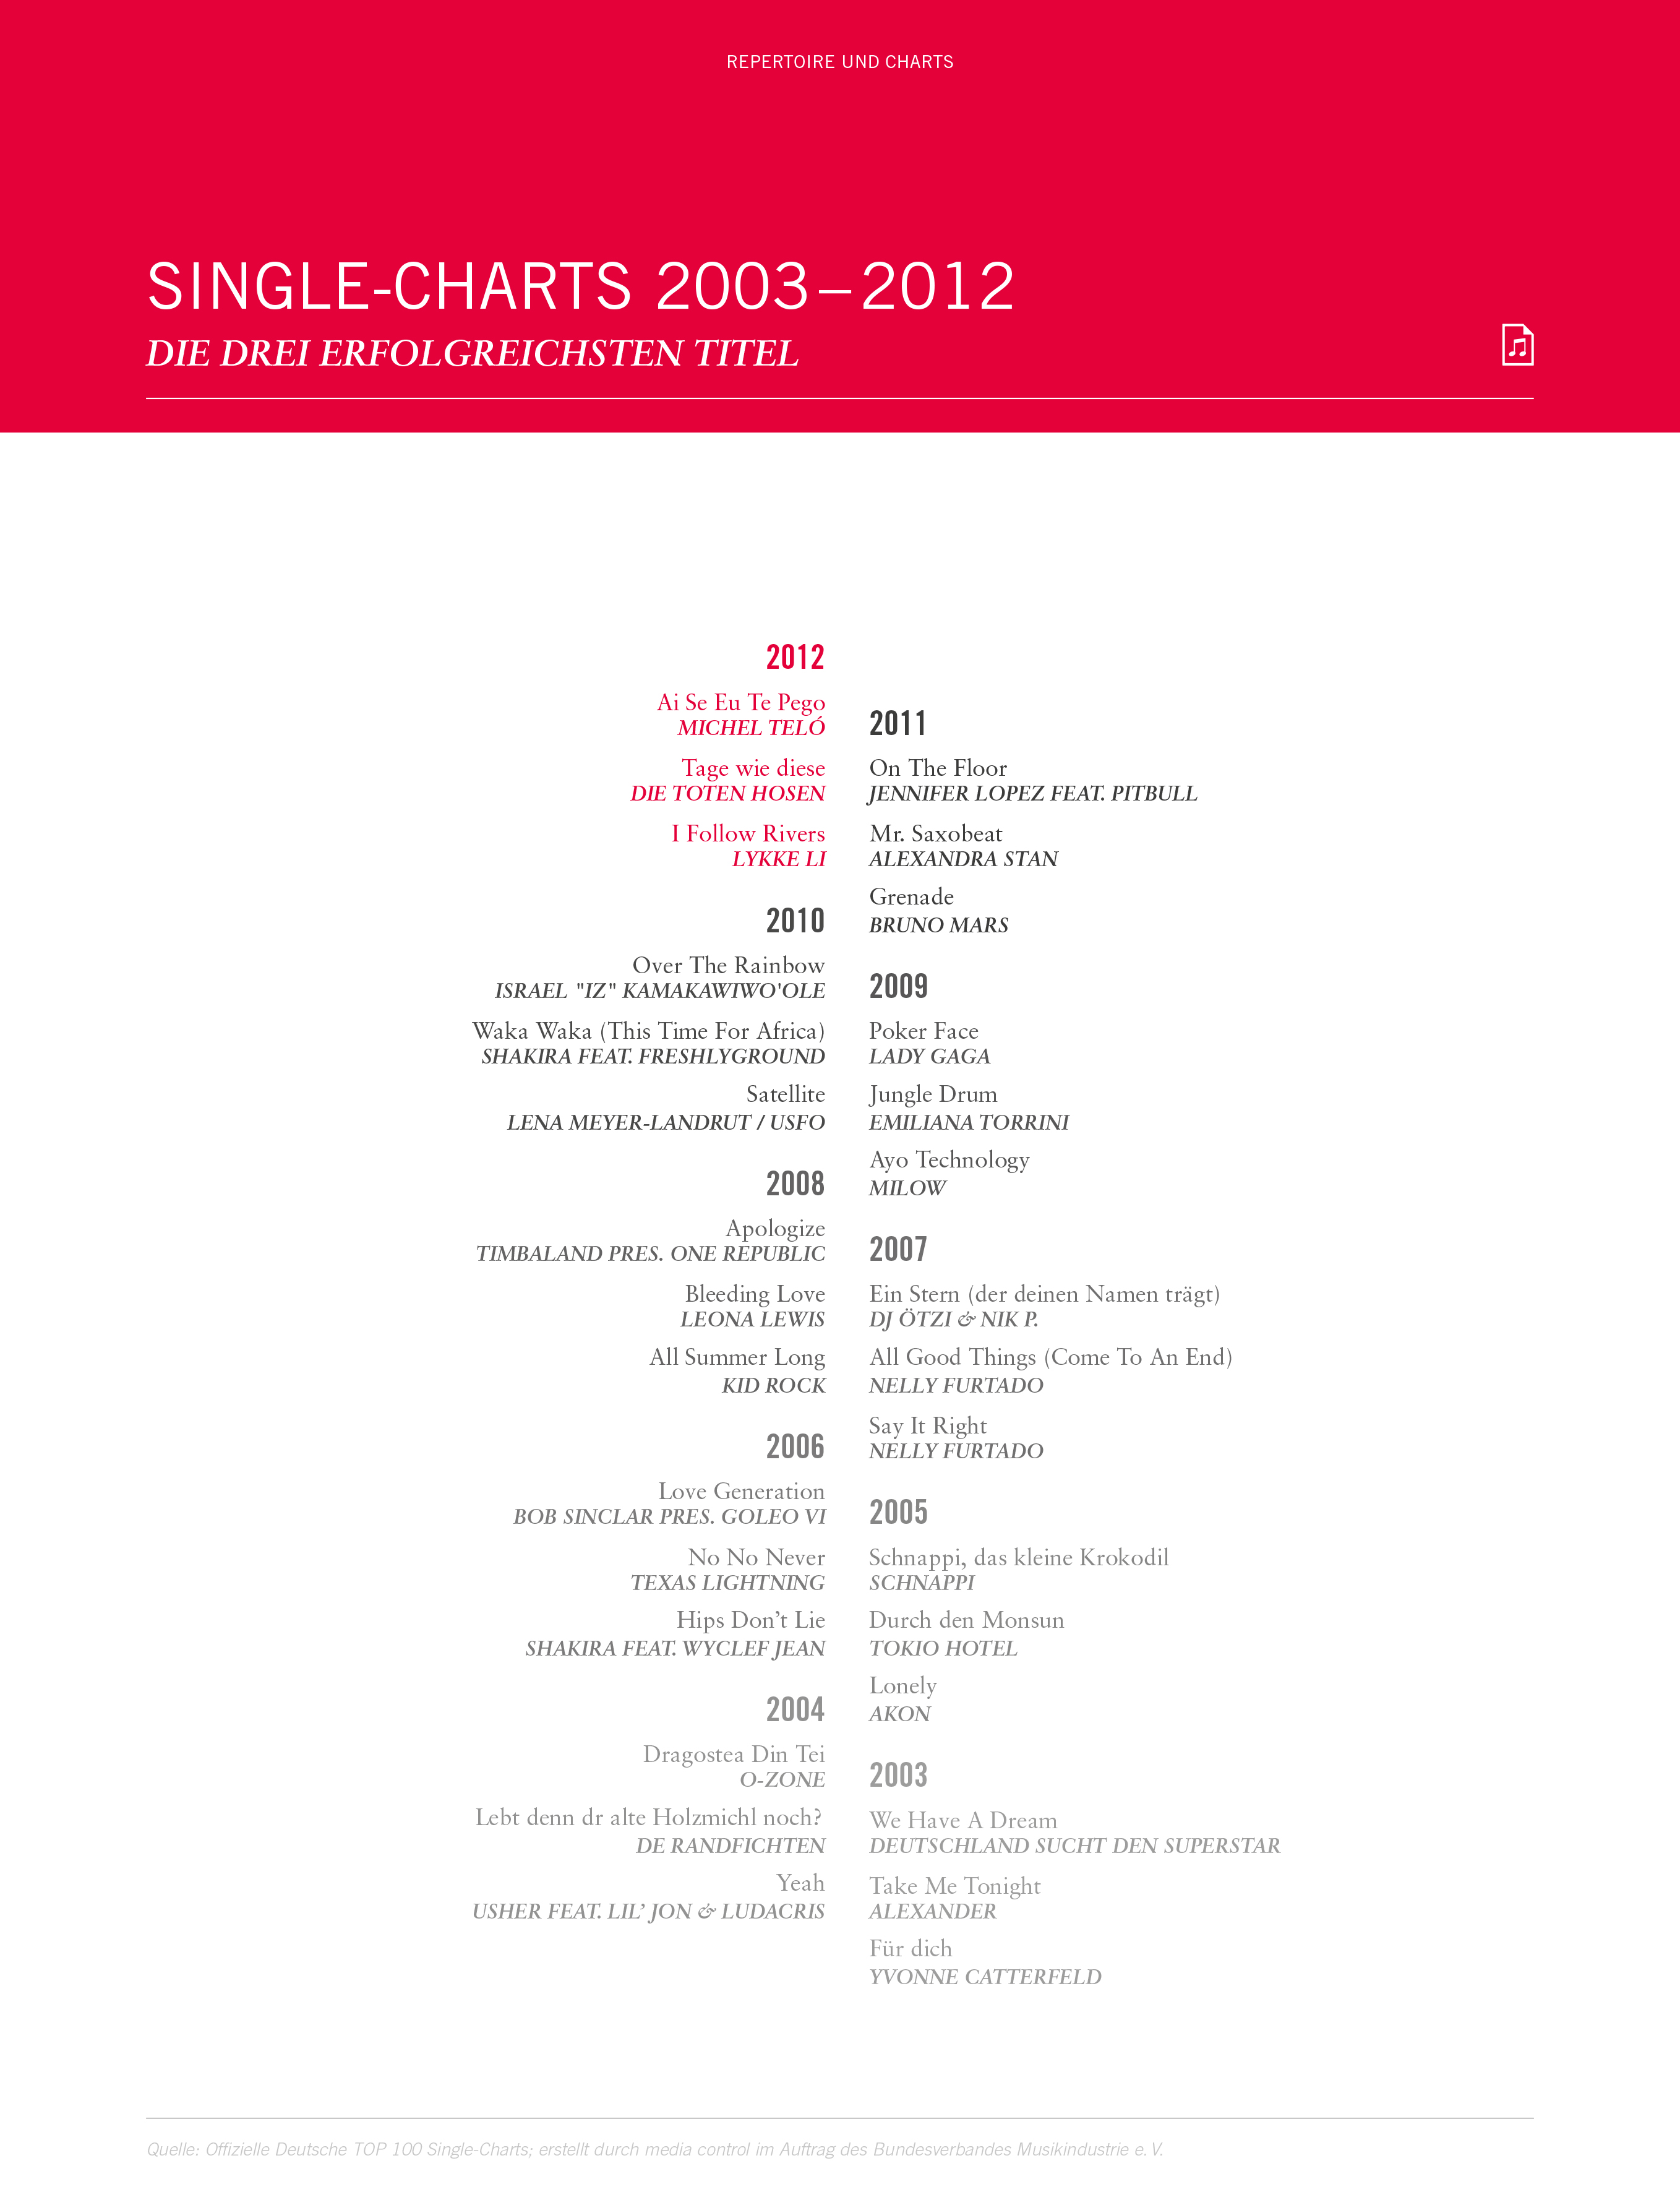 Deutsche Lieder Charts 2014